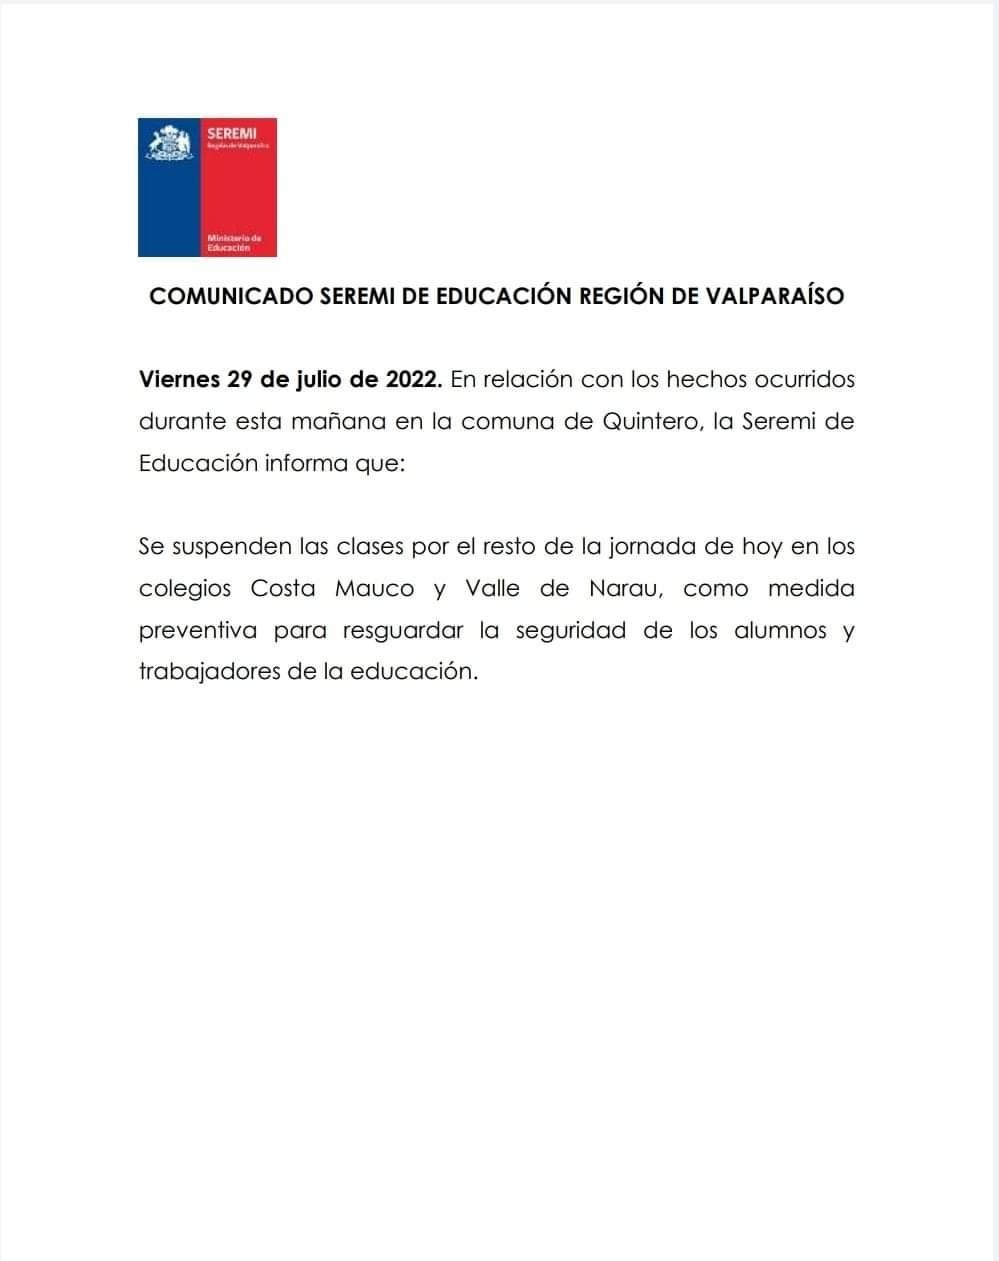 Suspenden clases en dos colegios de Quintero este viernes 29 de julio de 2022